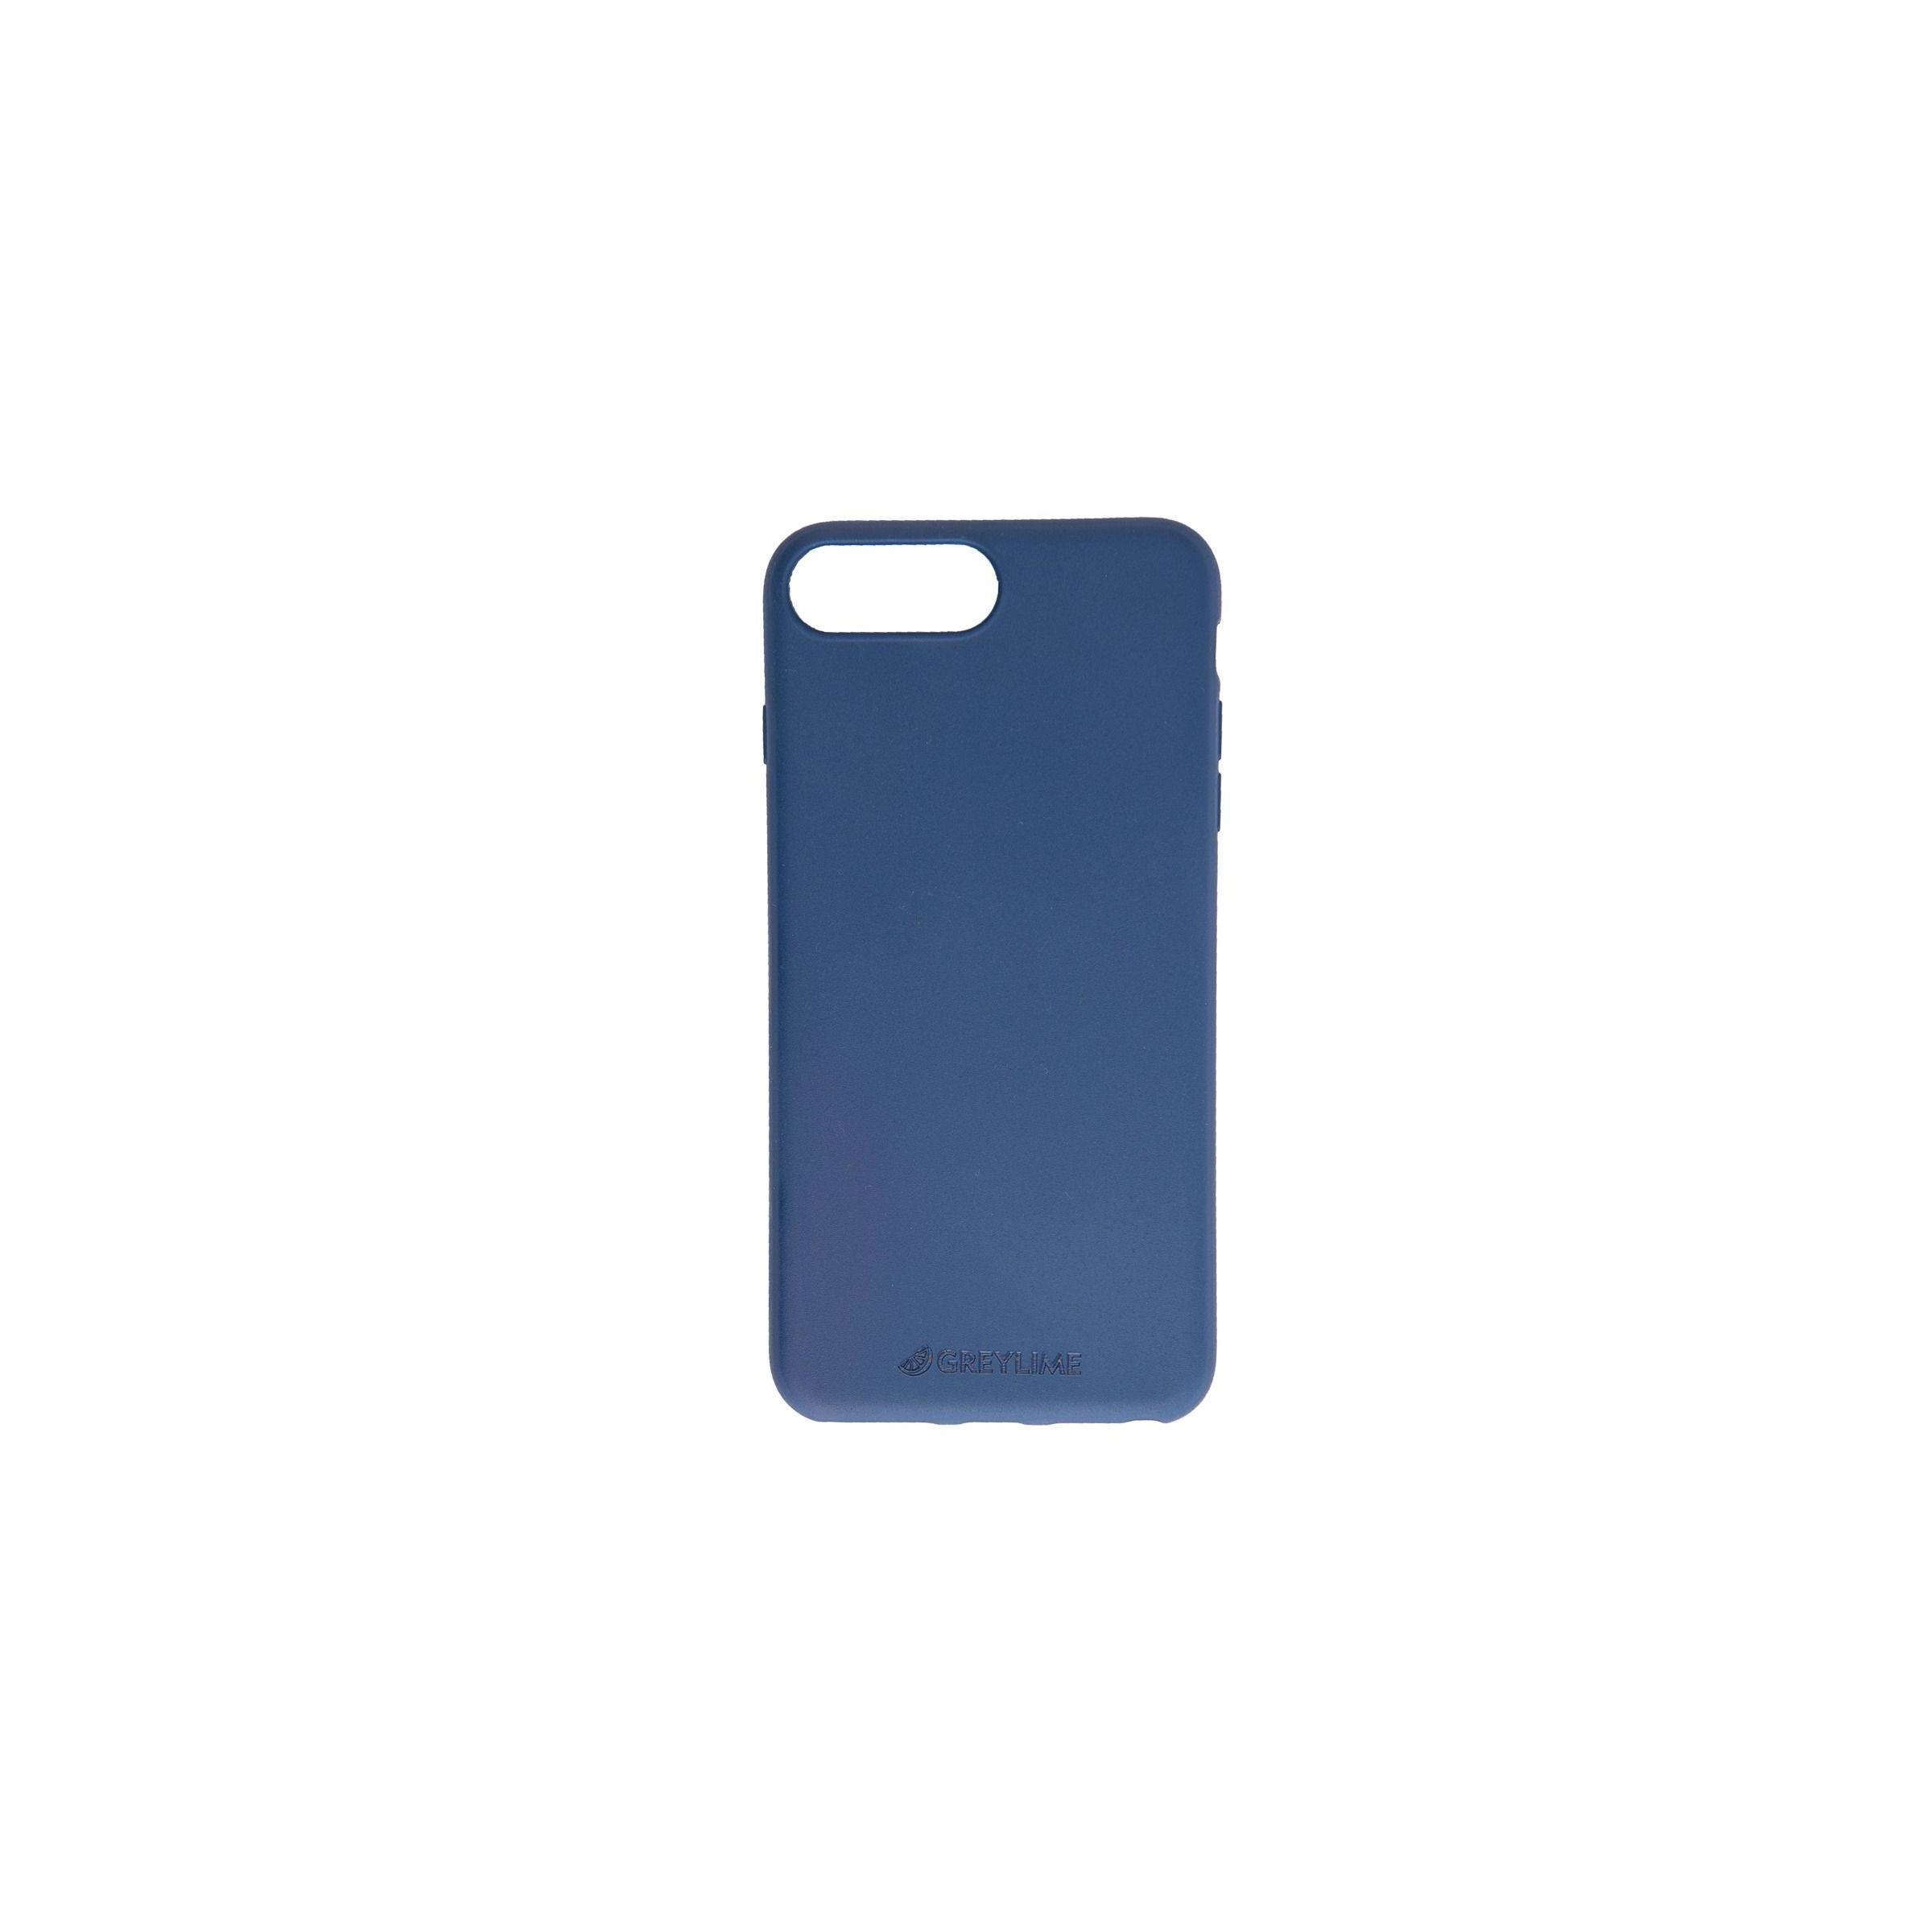 Bilde av Iphone 6/7/8 Plus Biodegradable Cover Greylime, Farge Mørke Blå